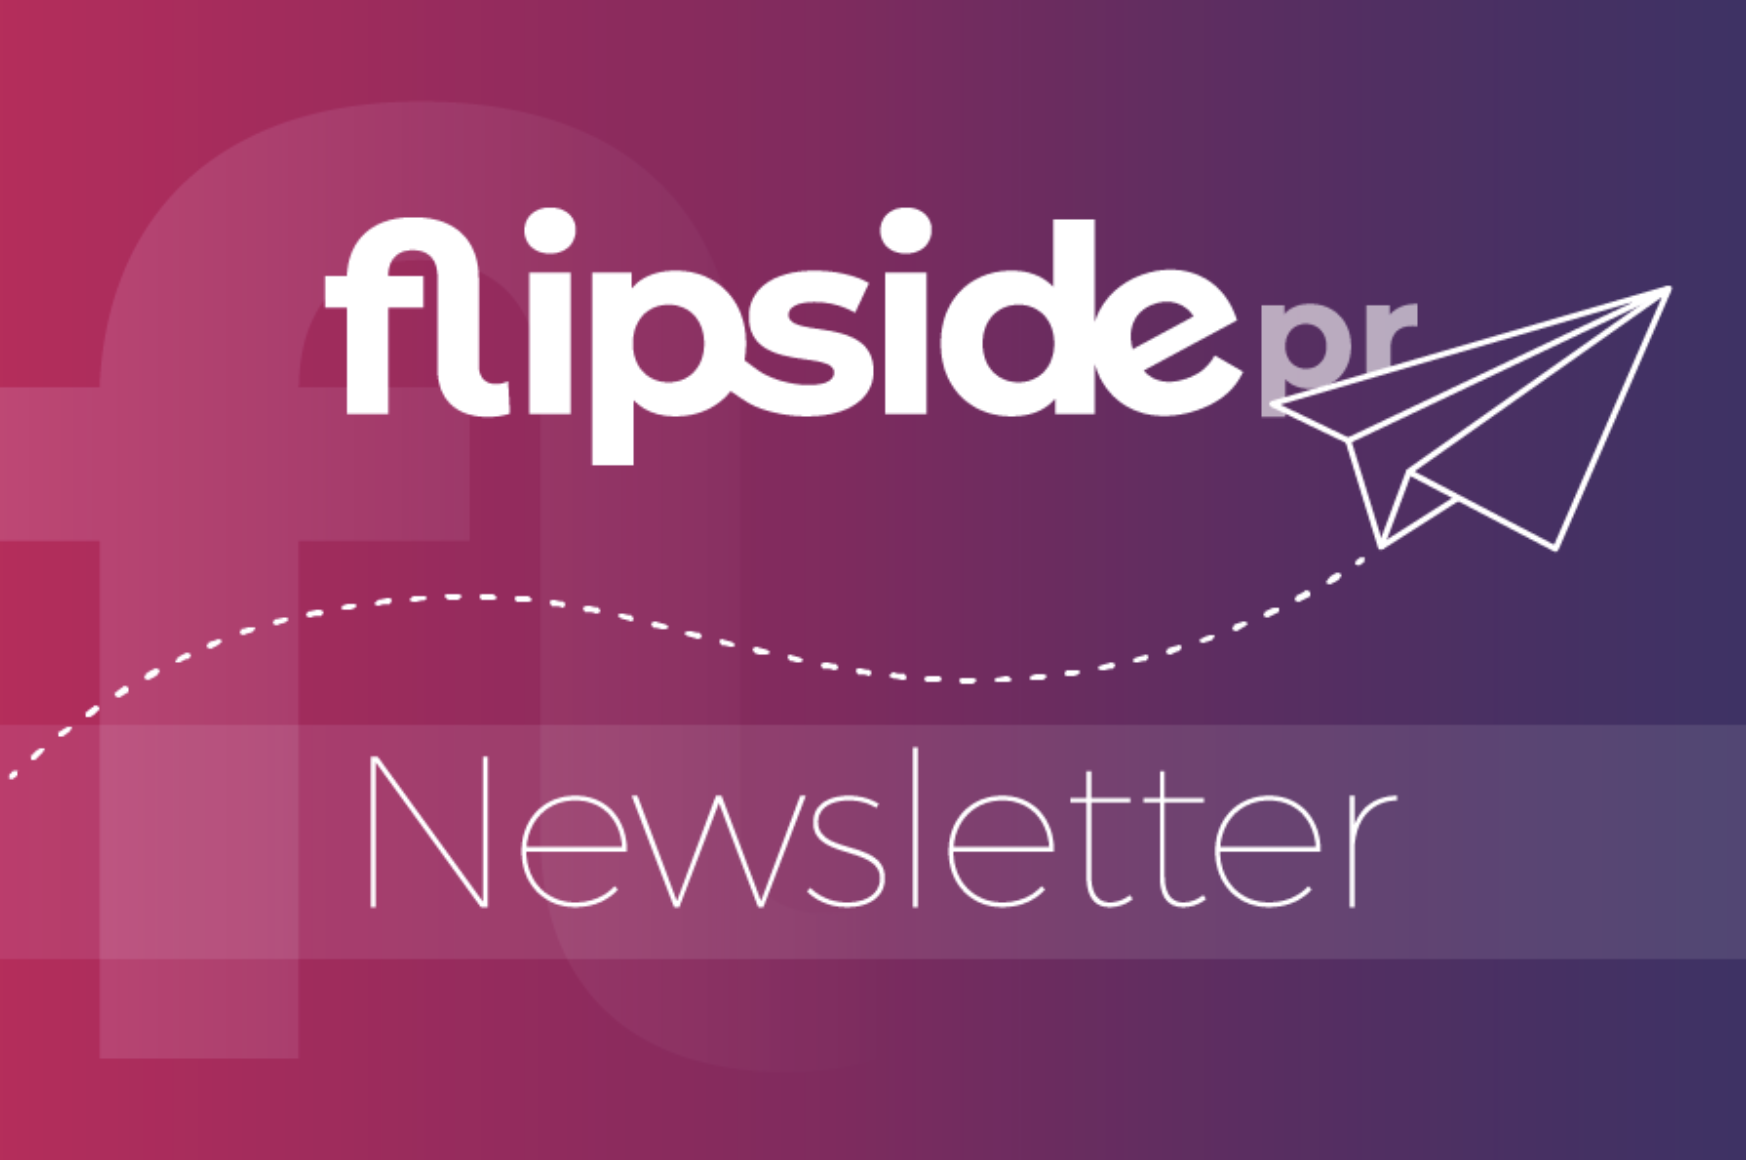 Flipside PR Newsletter logo